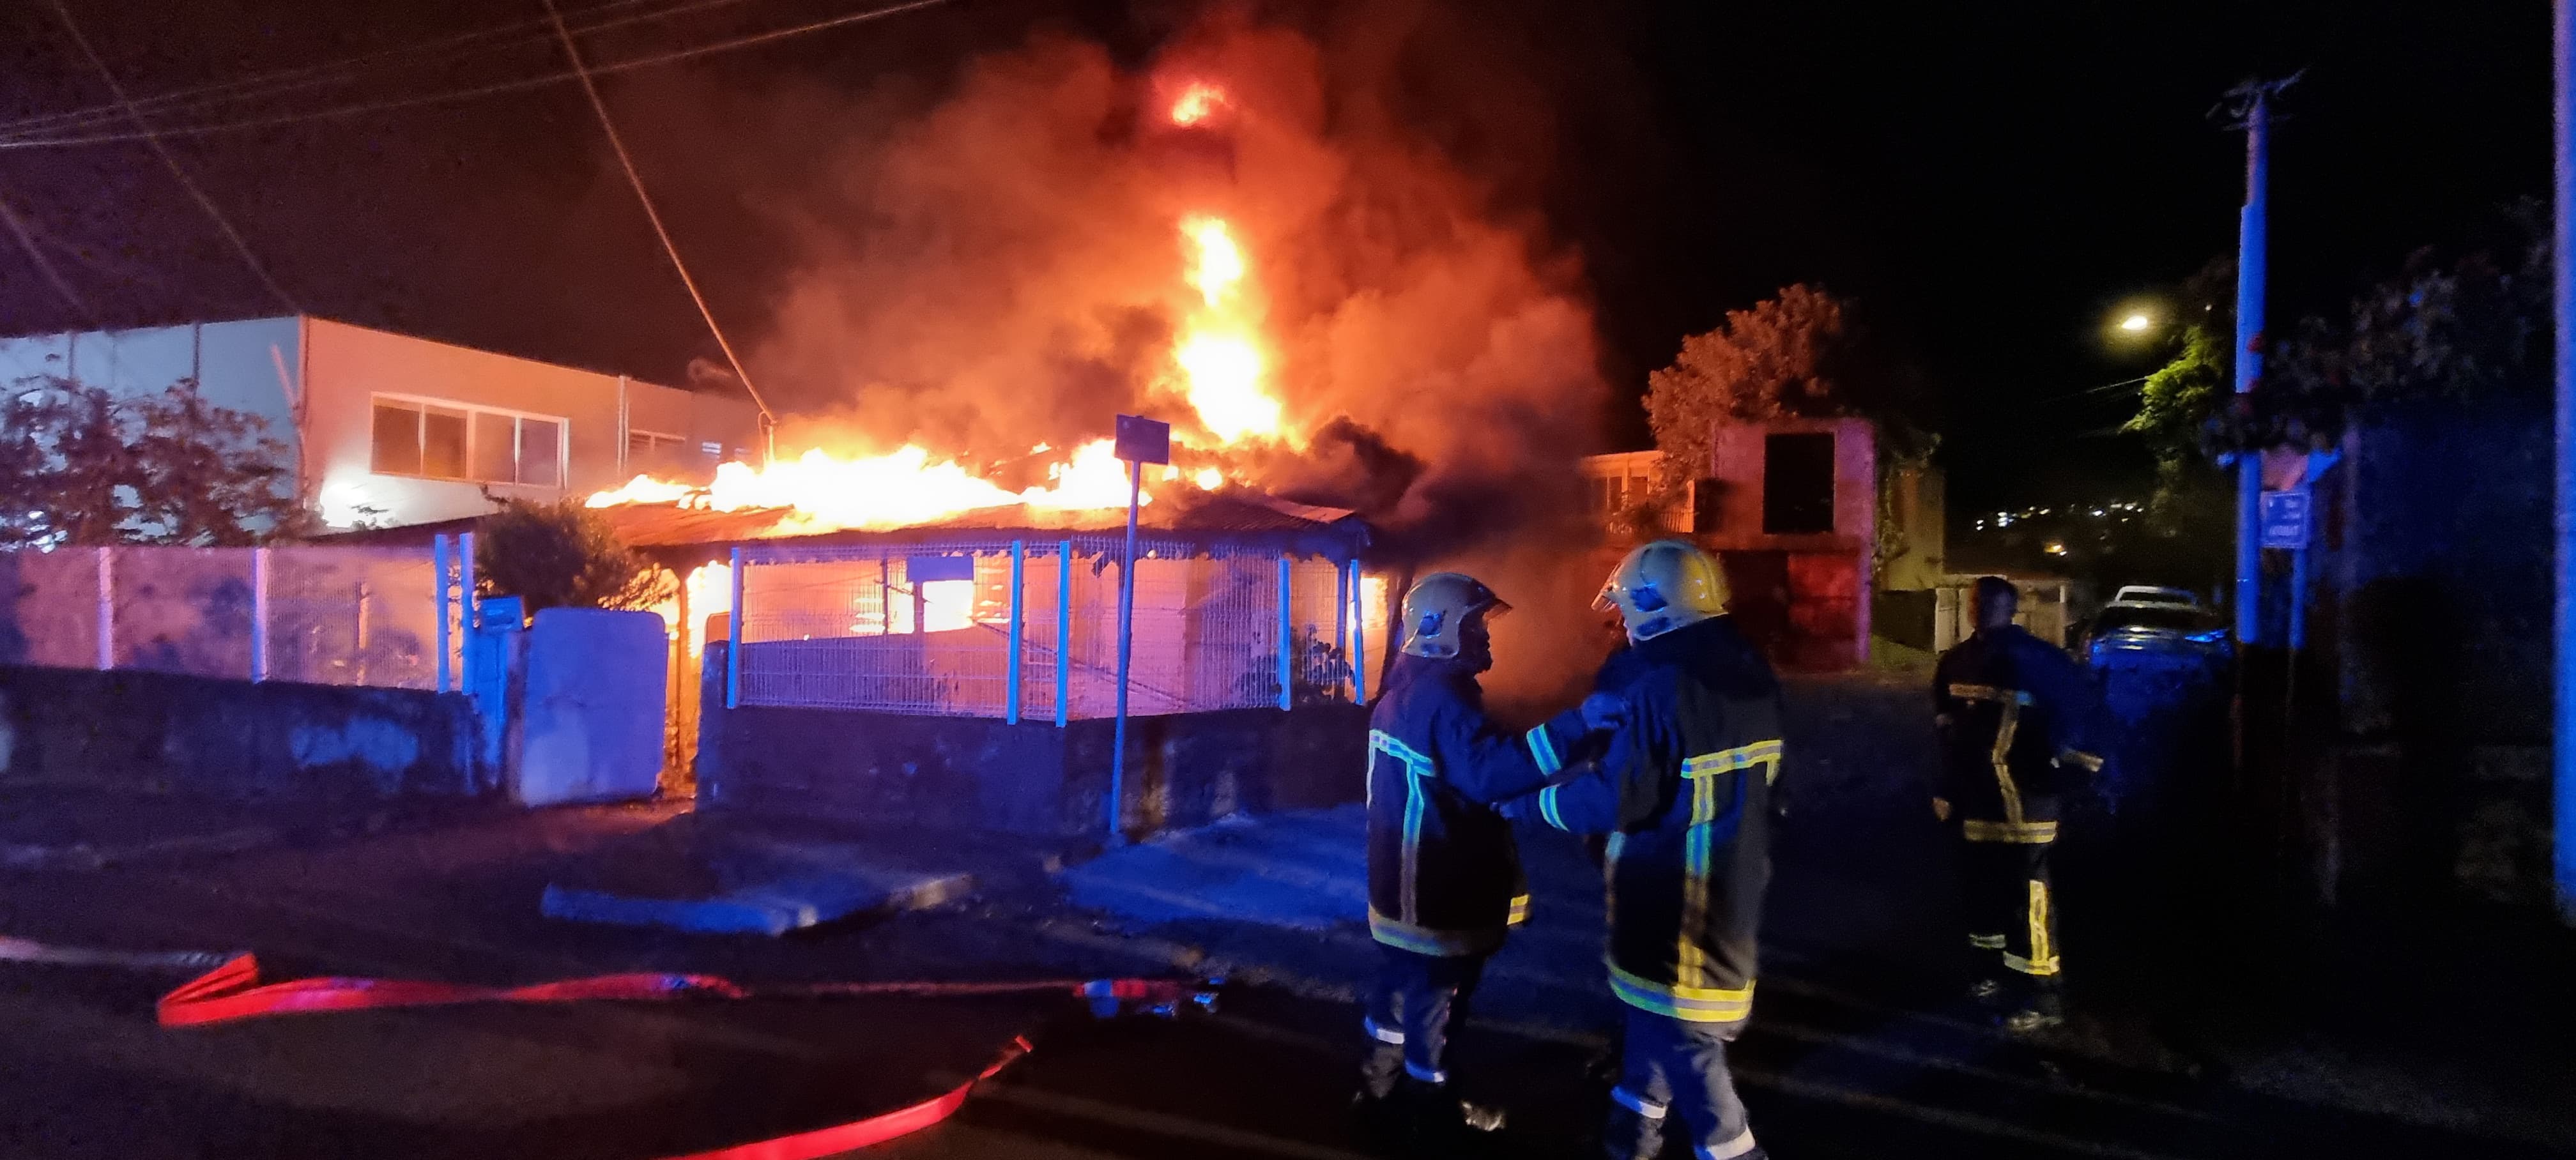     Une maison détruite par les flammes à Fort-de-France

